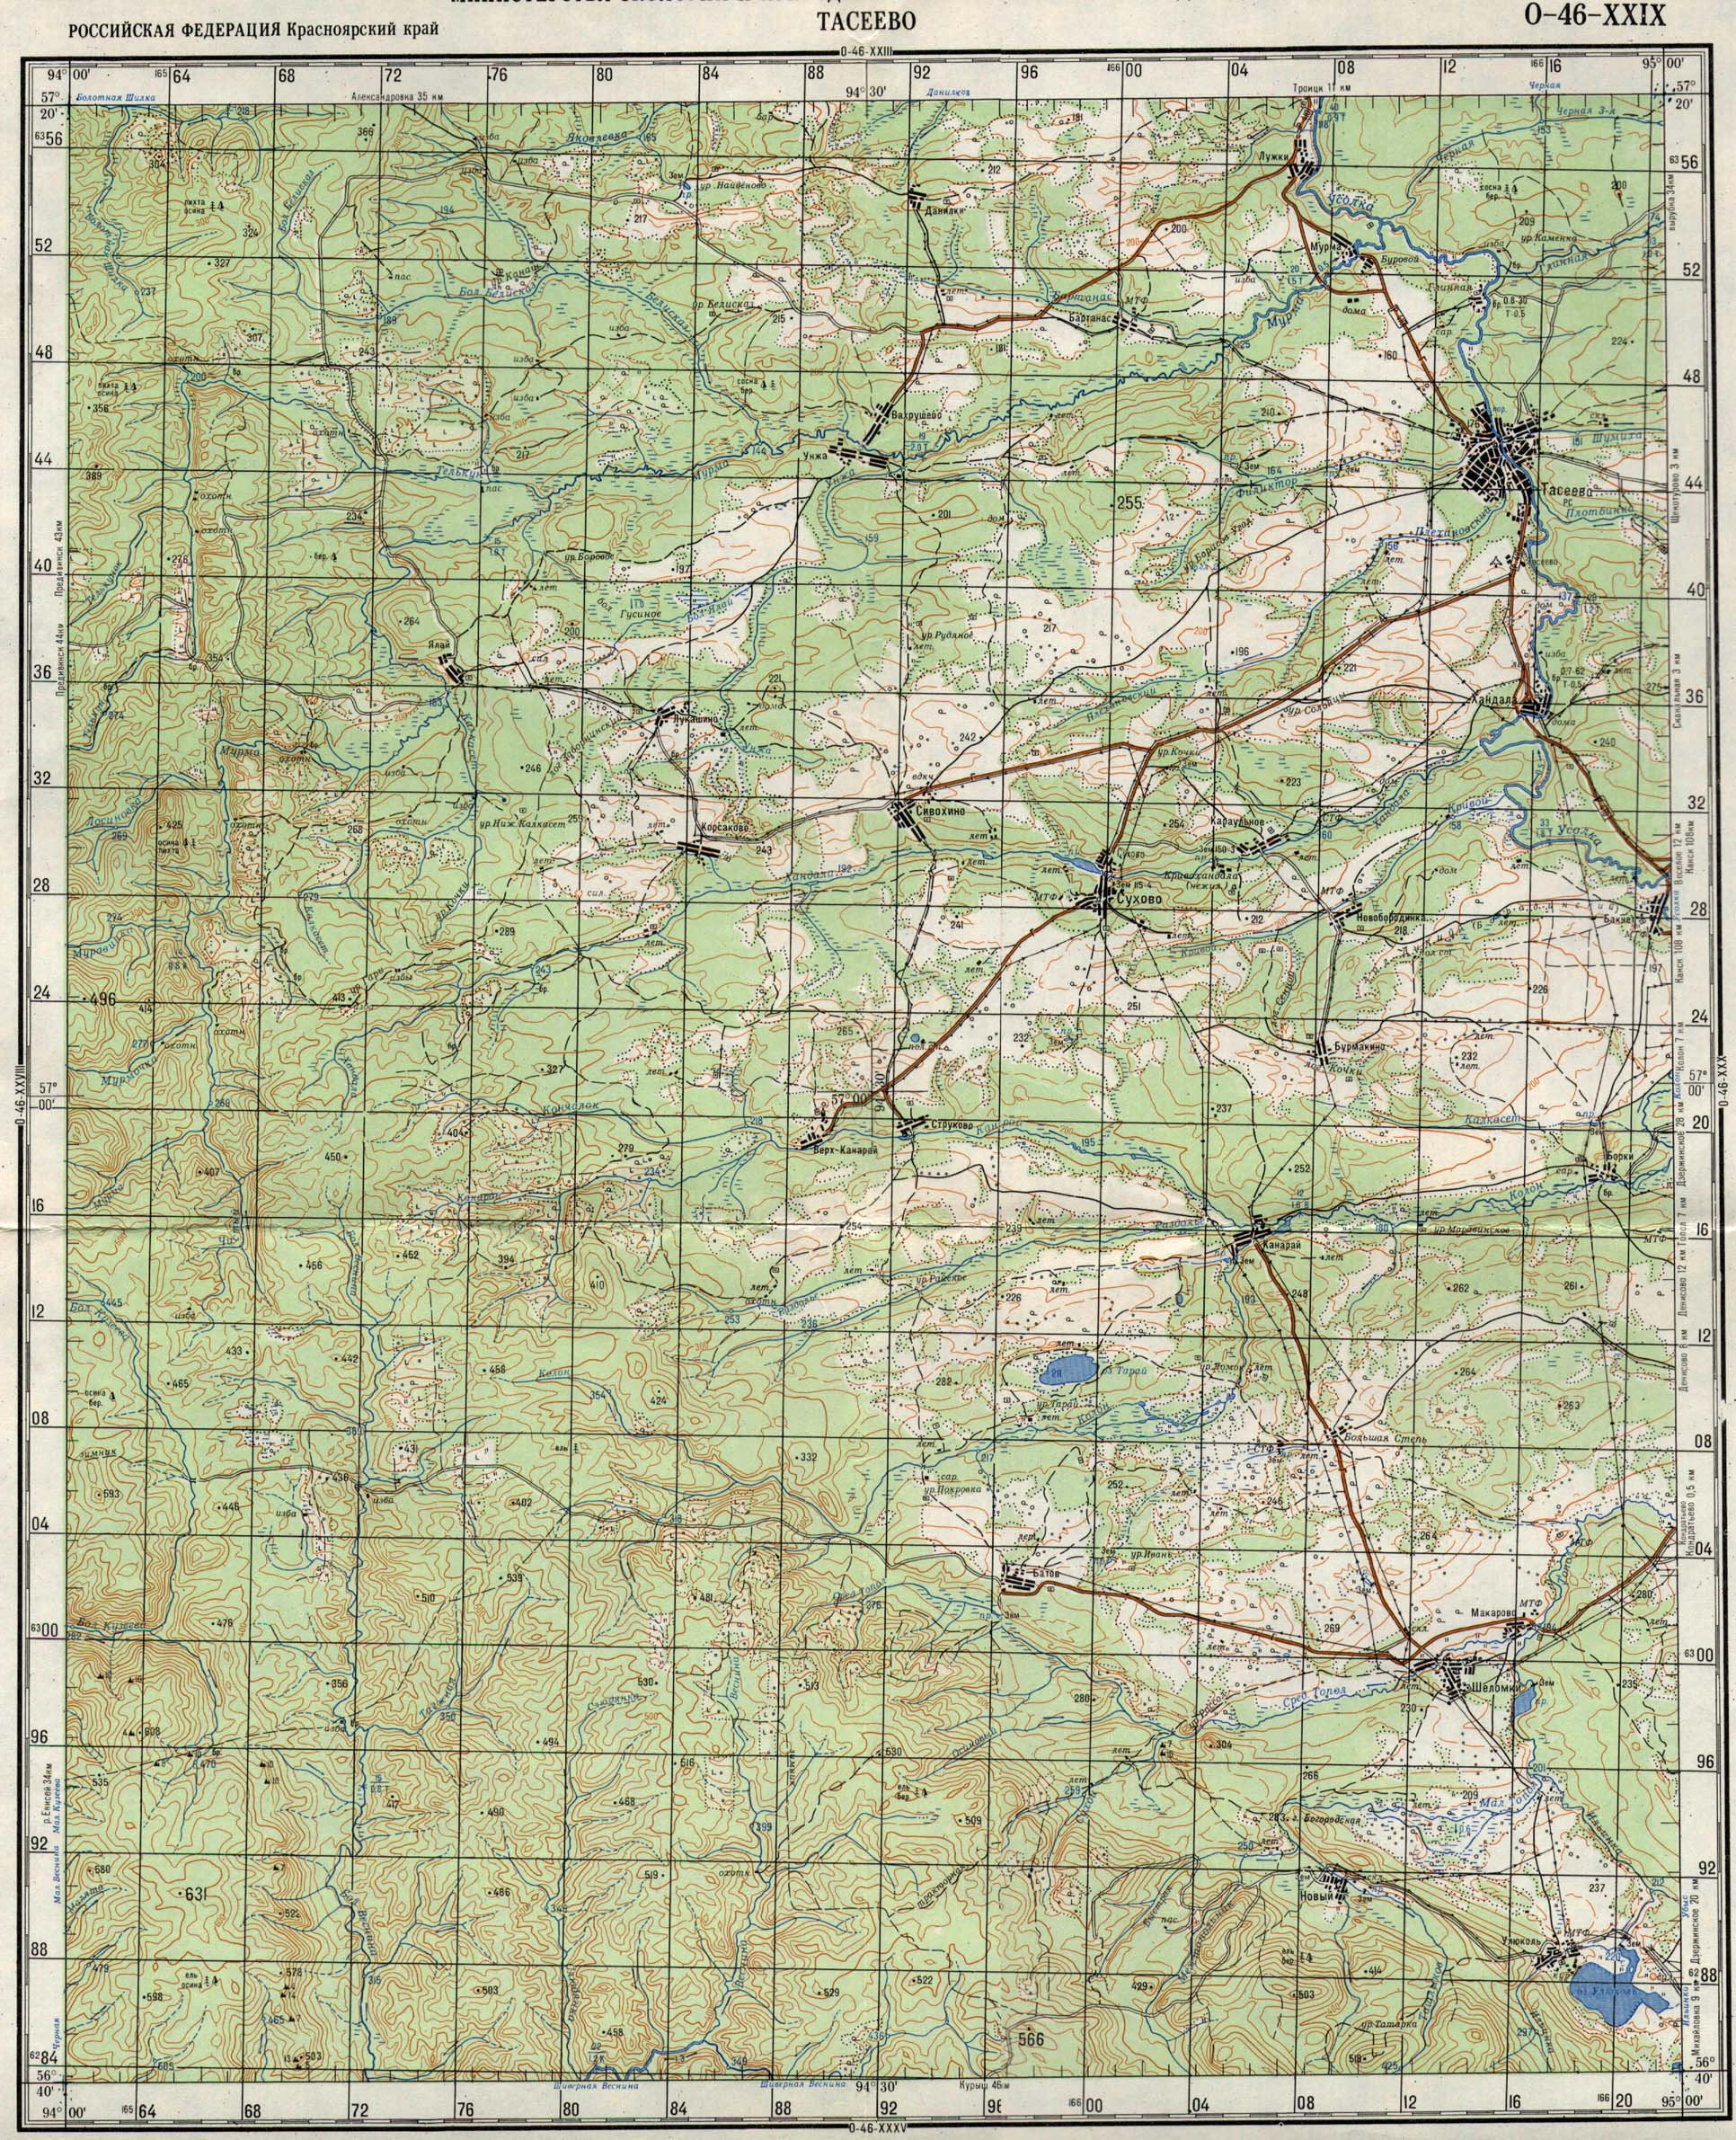 Топографічна мапа України, Росії, Білорусі